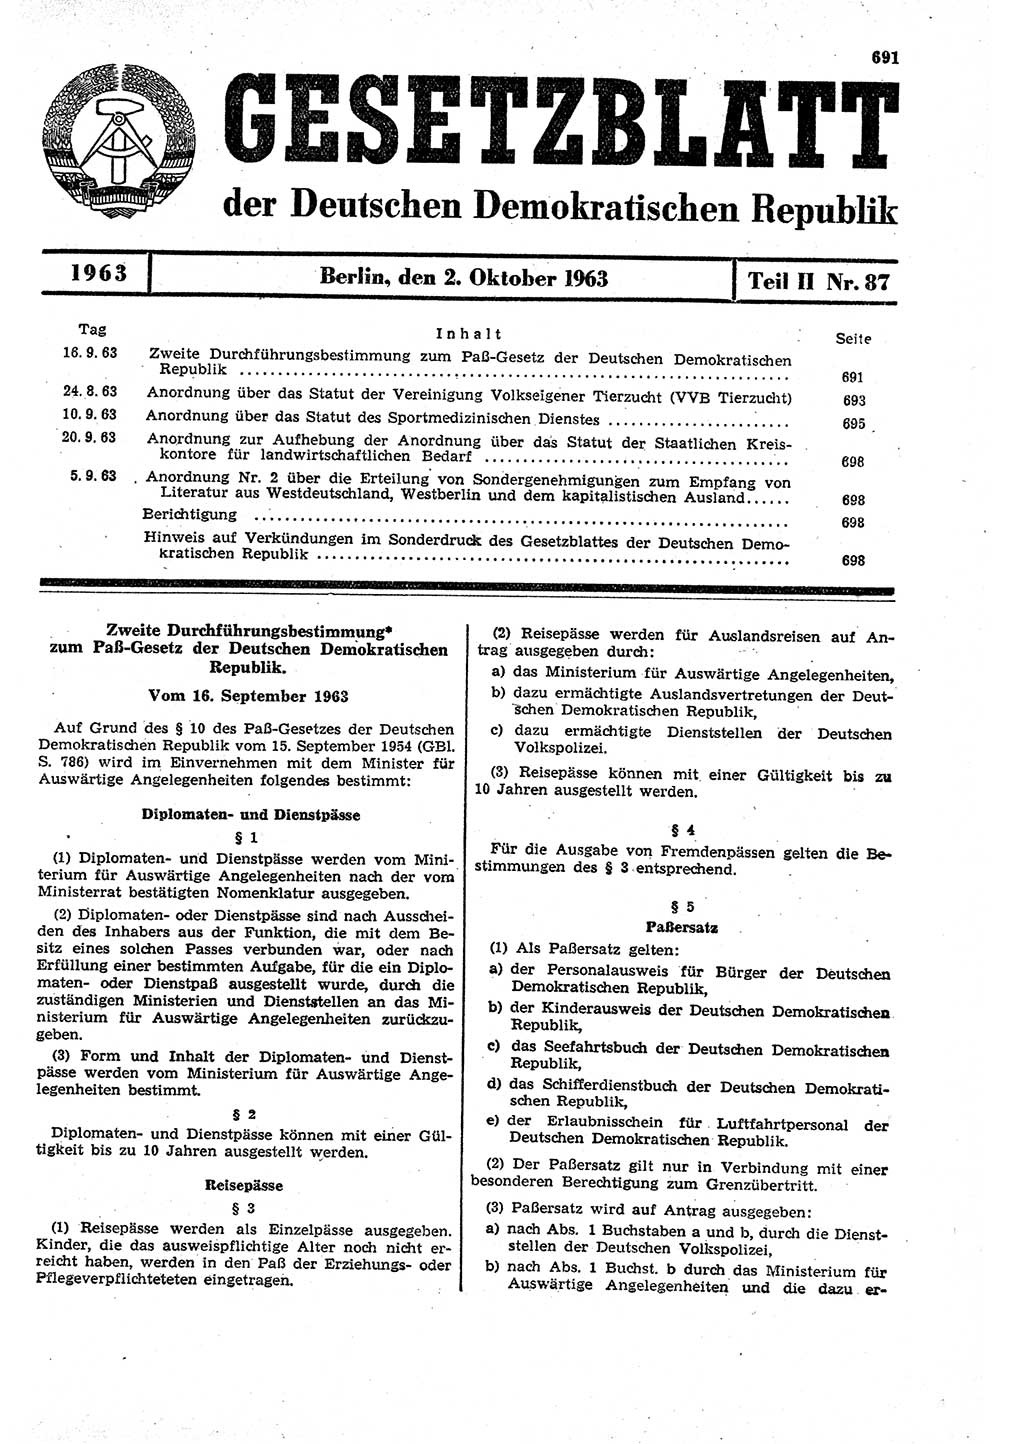 Gesetzblatt (GBl.) der Deutschen Demokratischen Republik (DDR) Teil ⅠⅠ 1963, Seite 691 (GBl. DDR ⅠⅠ 1963, S. 691)